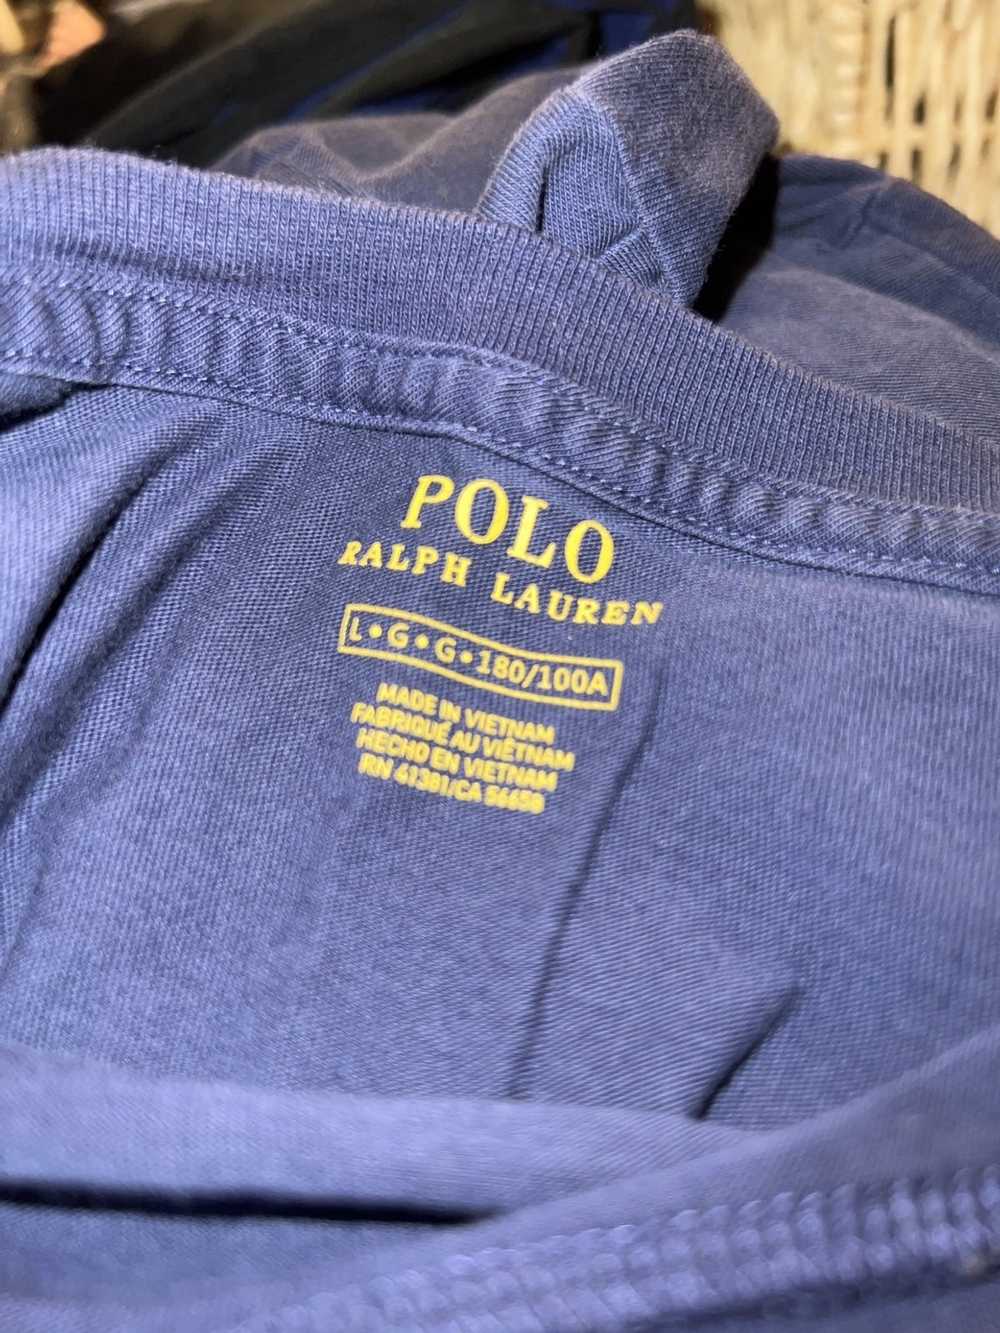 Polo Ralph Lauren Ralph Lauren t shirt - image 3